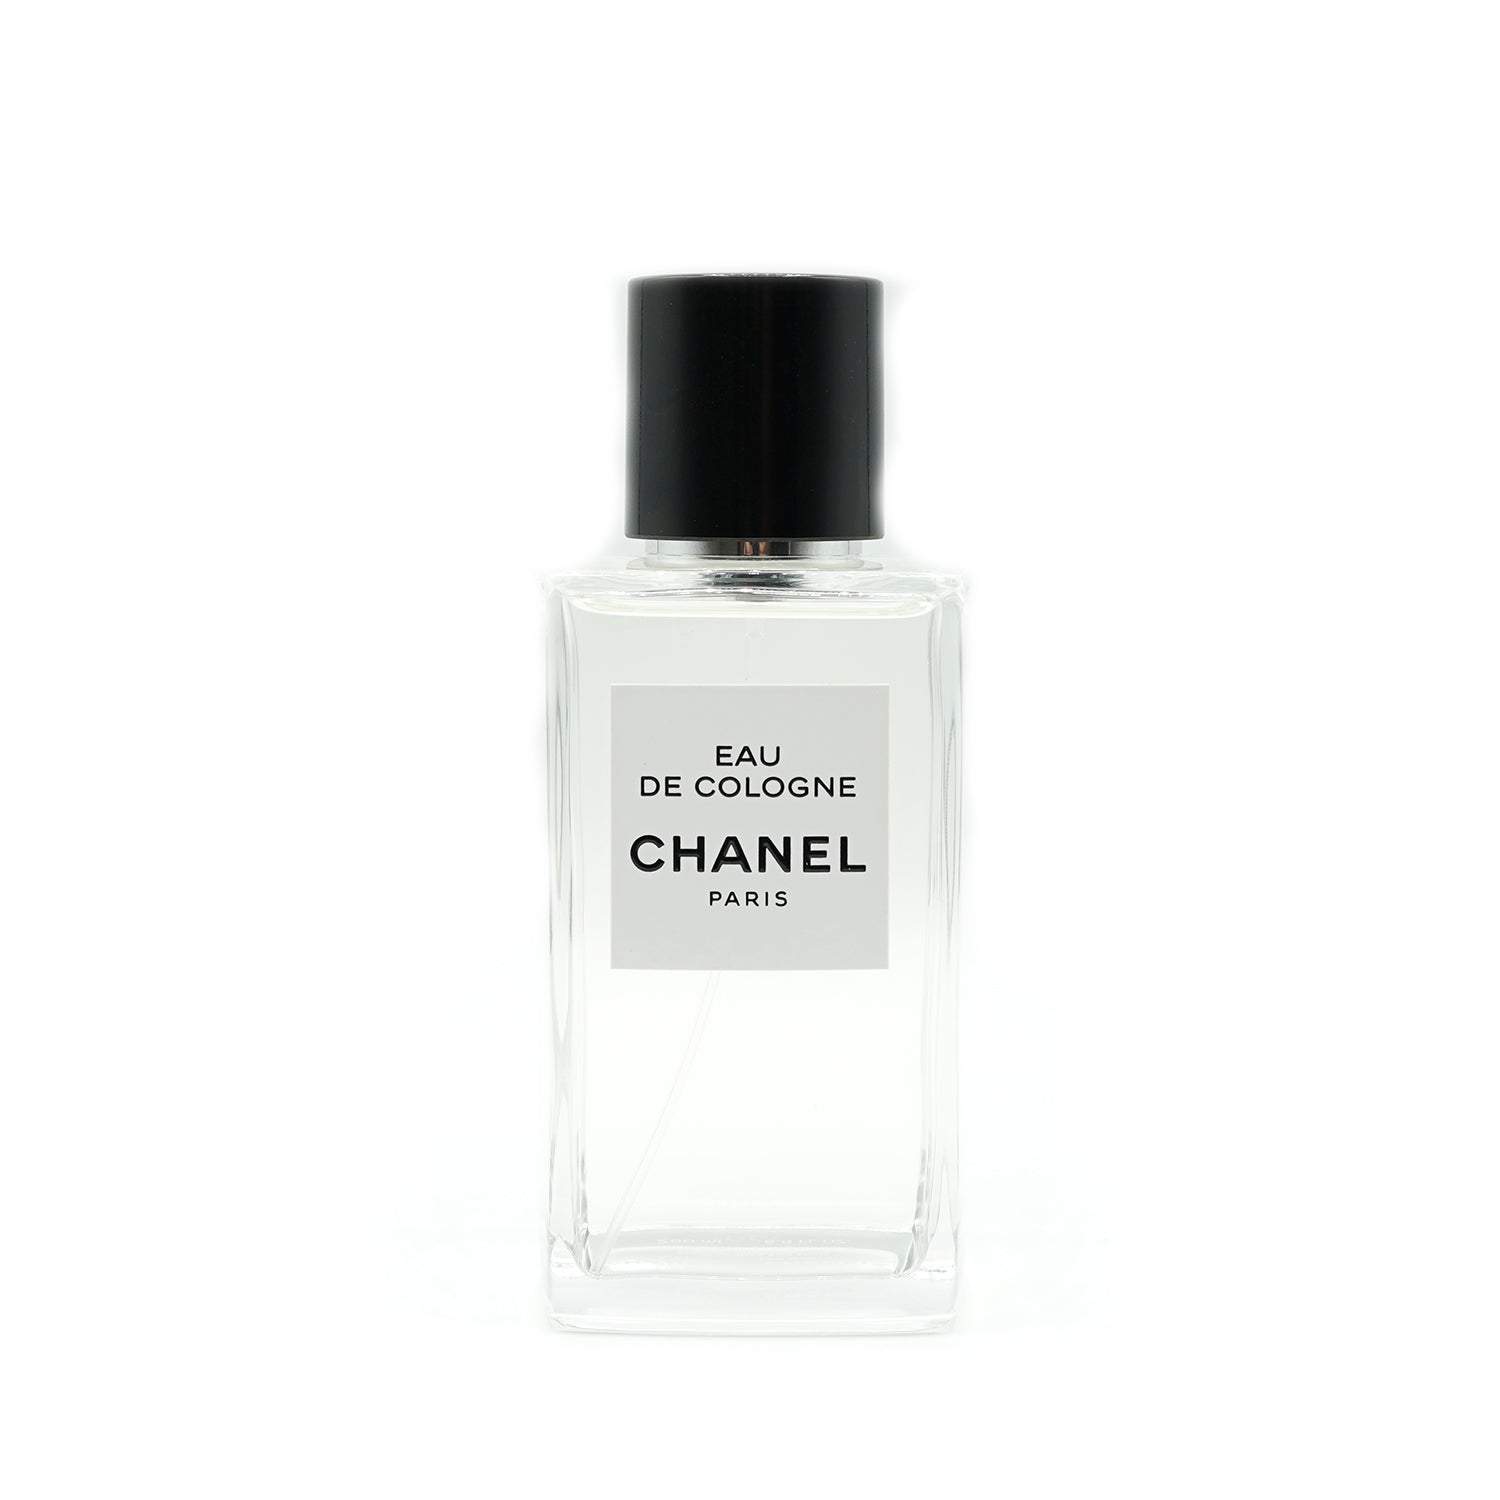 Les Exclusifs de Chanel | Eau de Cologne embouteillage